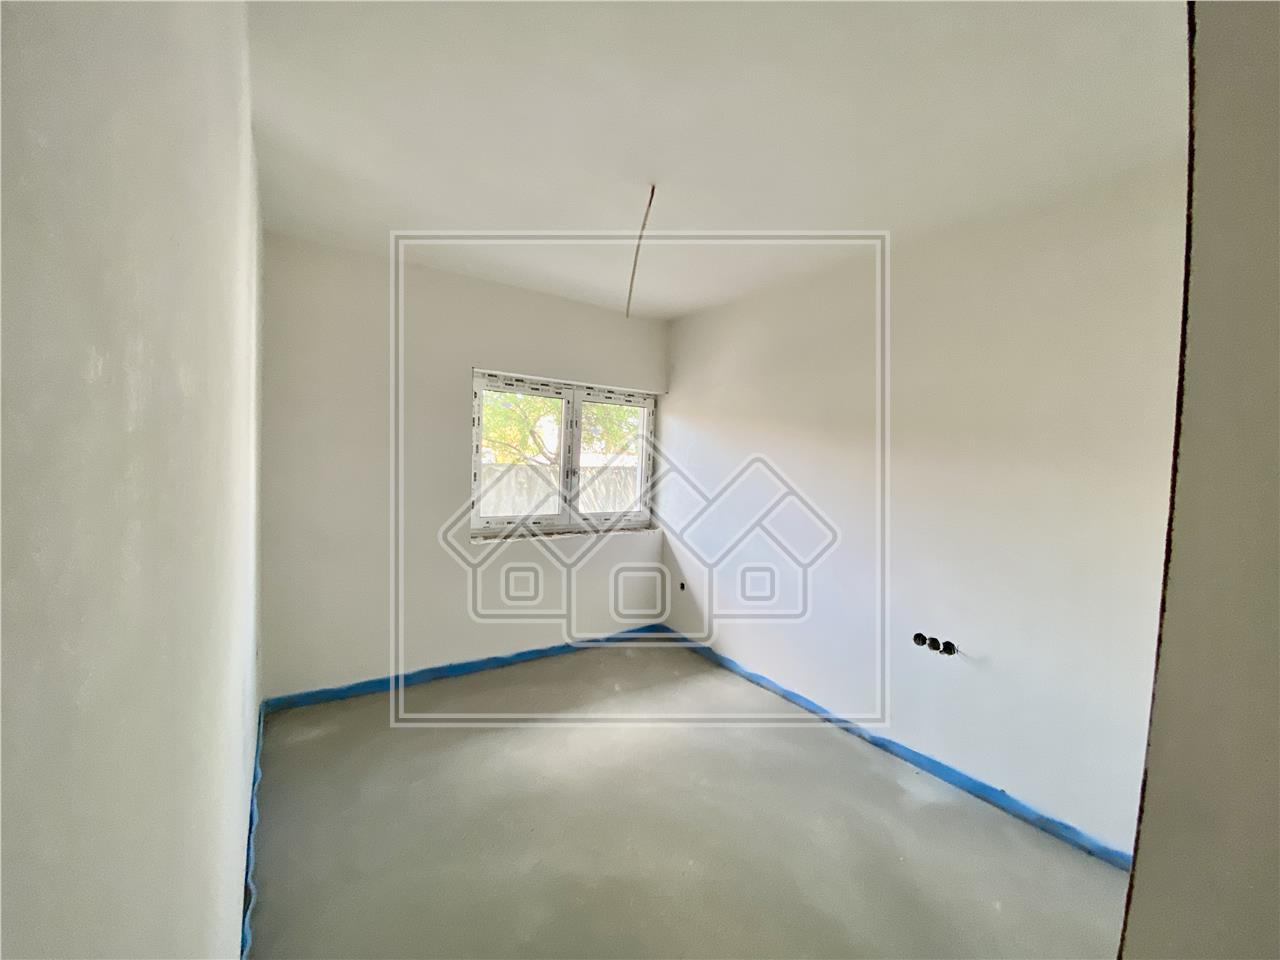 Wohnung zu verkaufen in Sibiu - 2 Zimmer, 2 B?der, Balkon und Garten